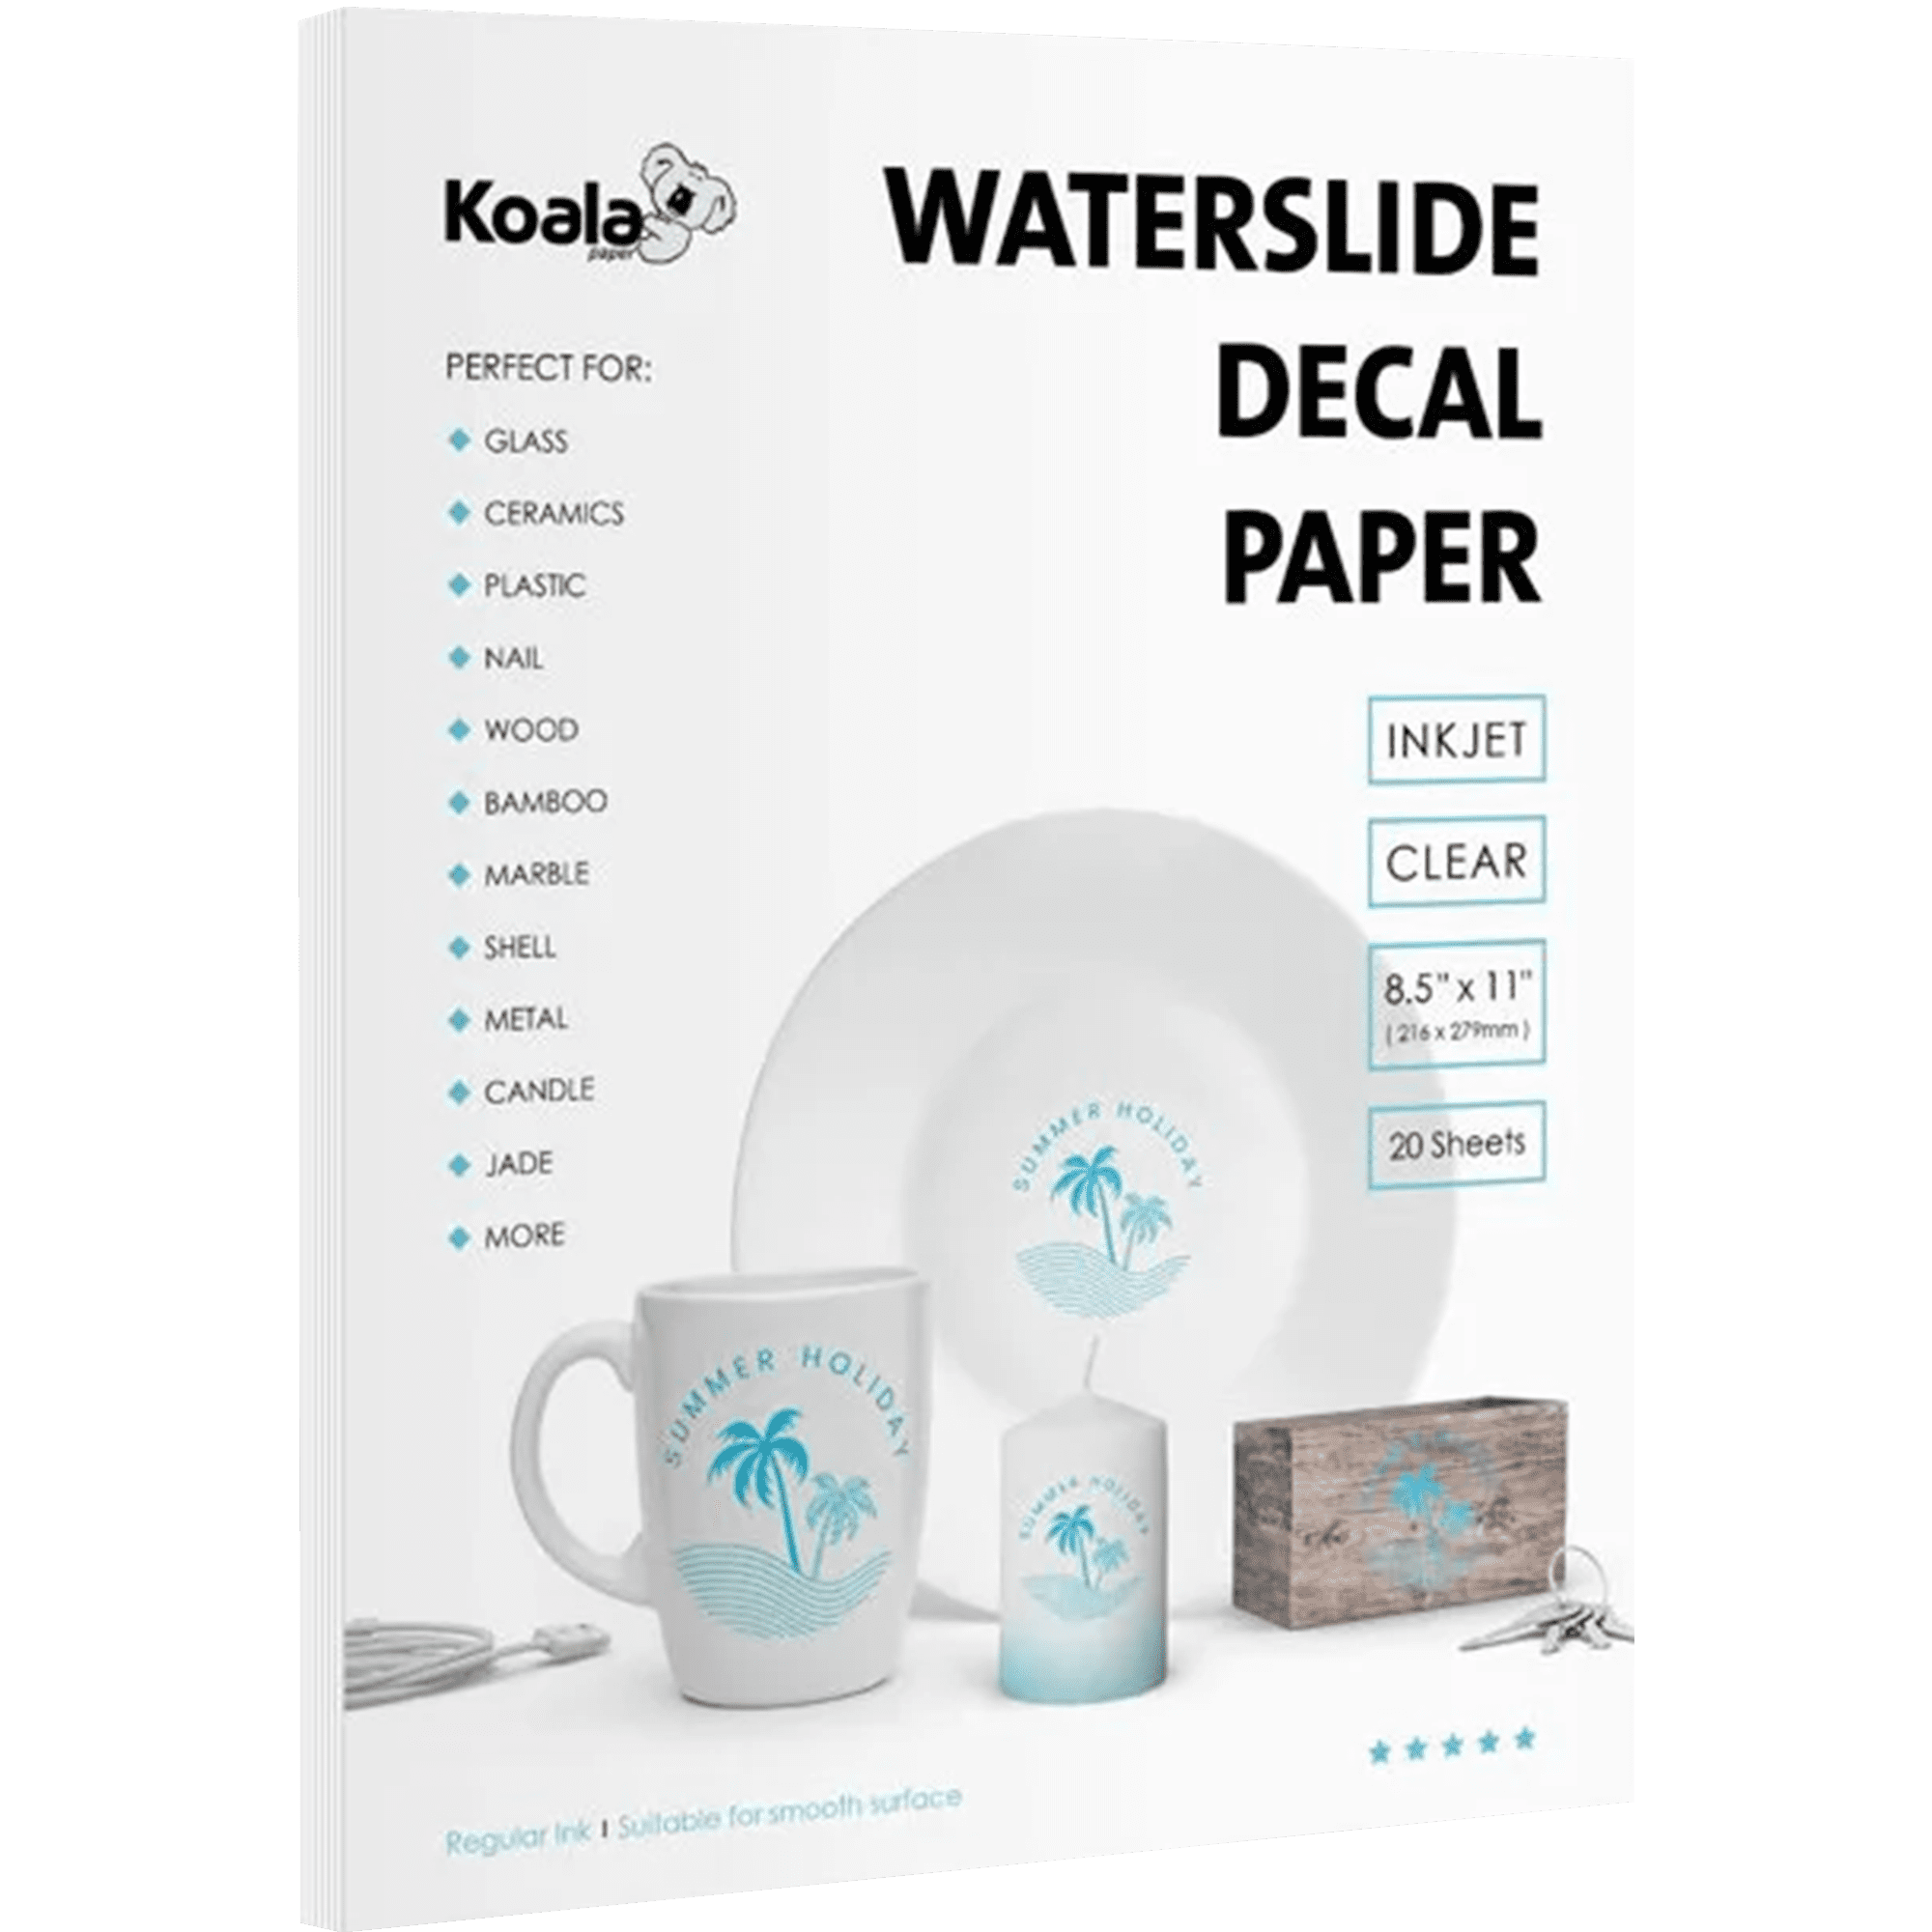 Koala Waterslide Decal Paper Inkjet White 25 Sheets Water Slide Transfer  Paper